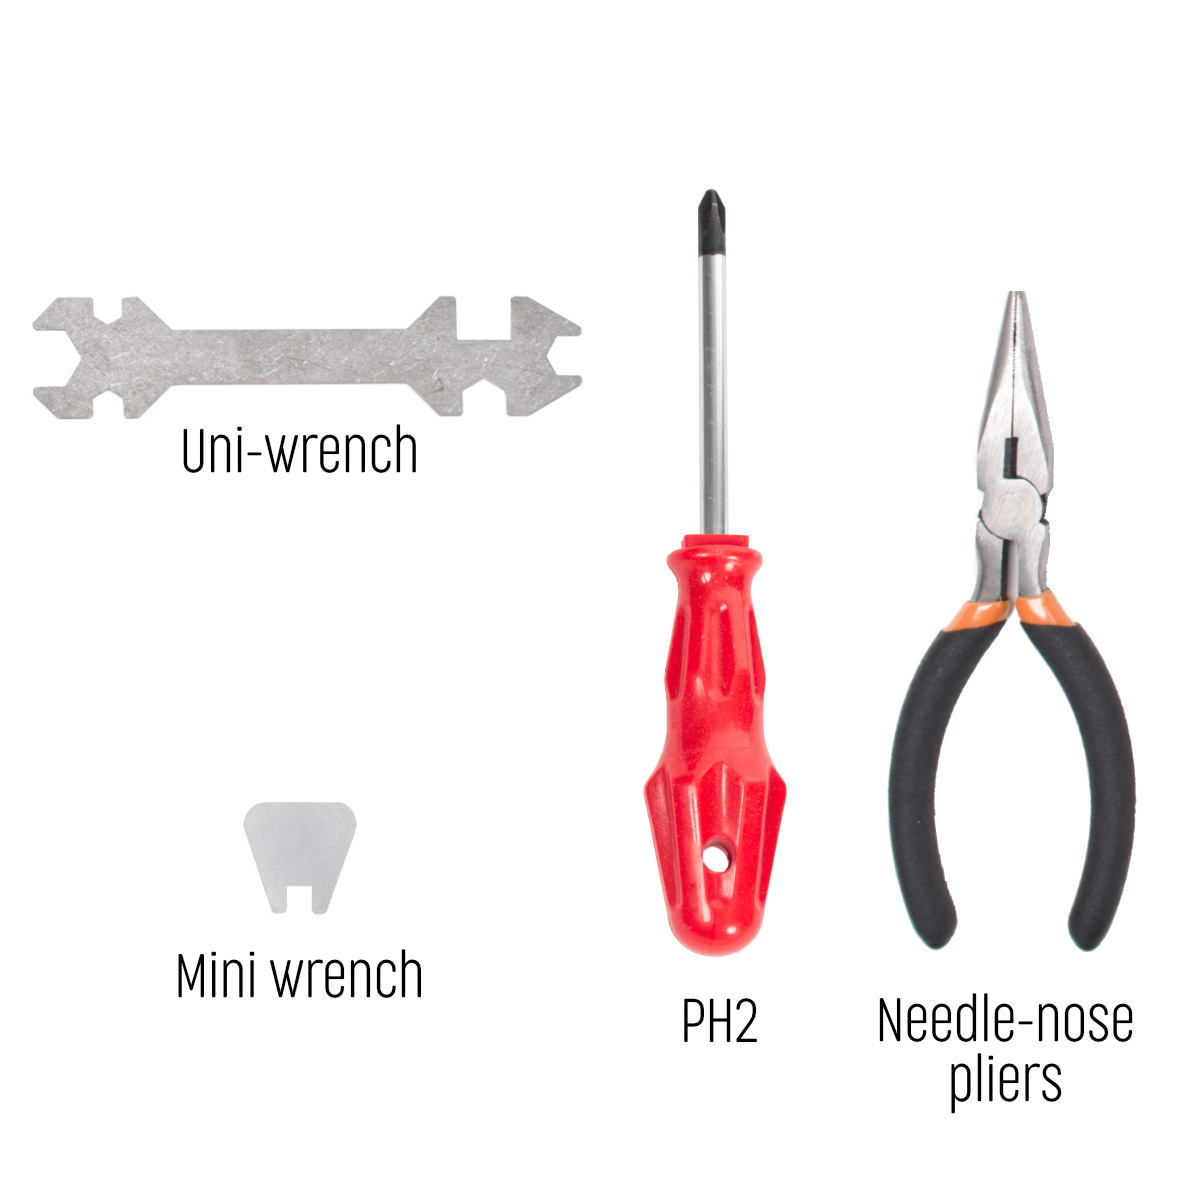 XL tools